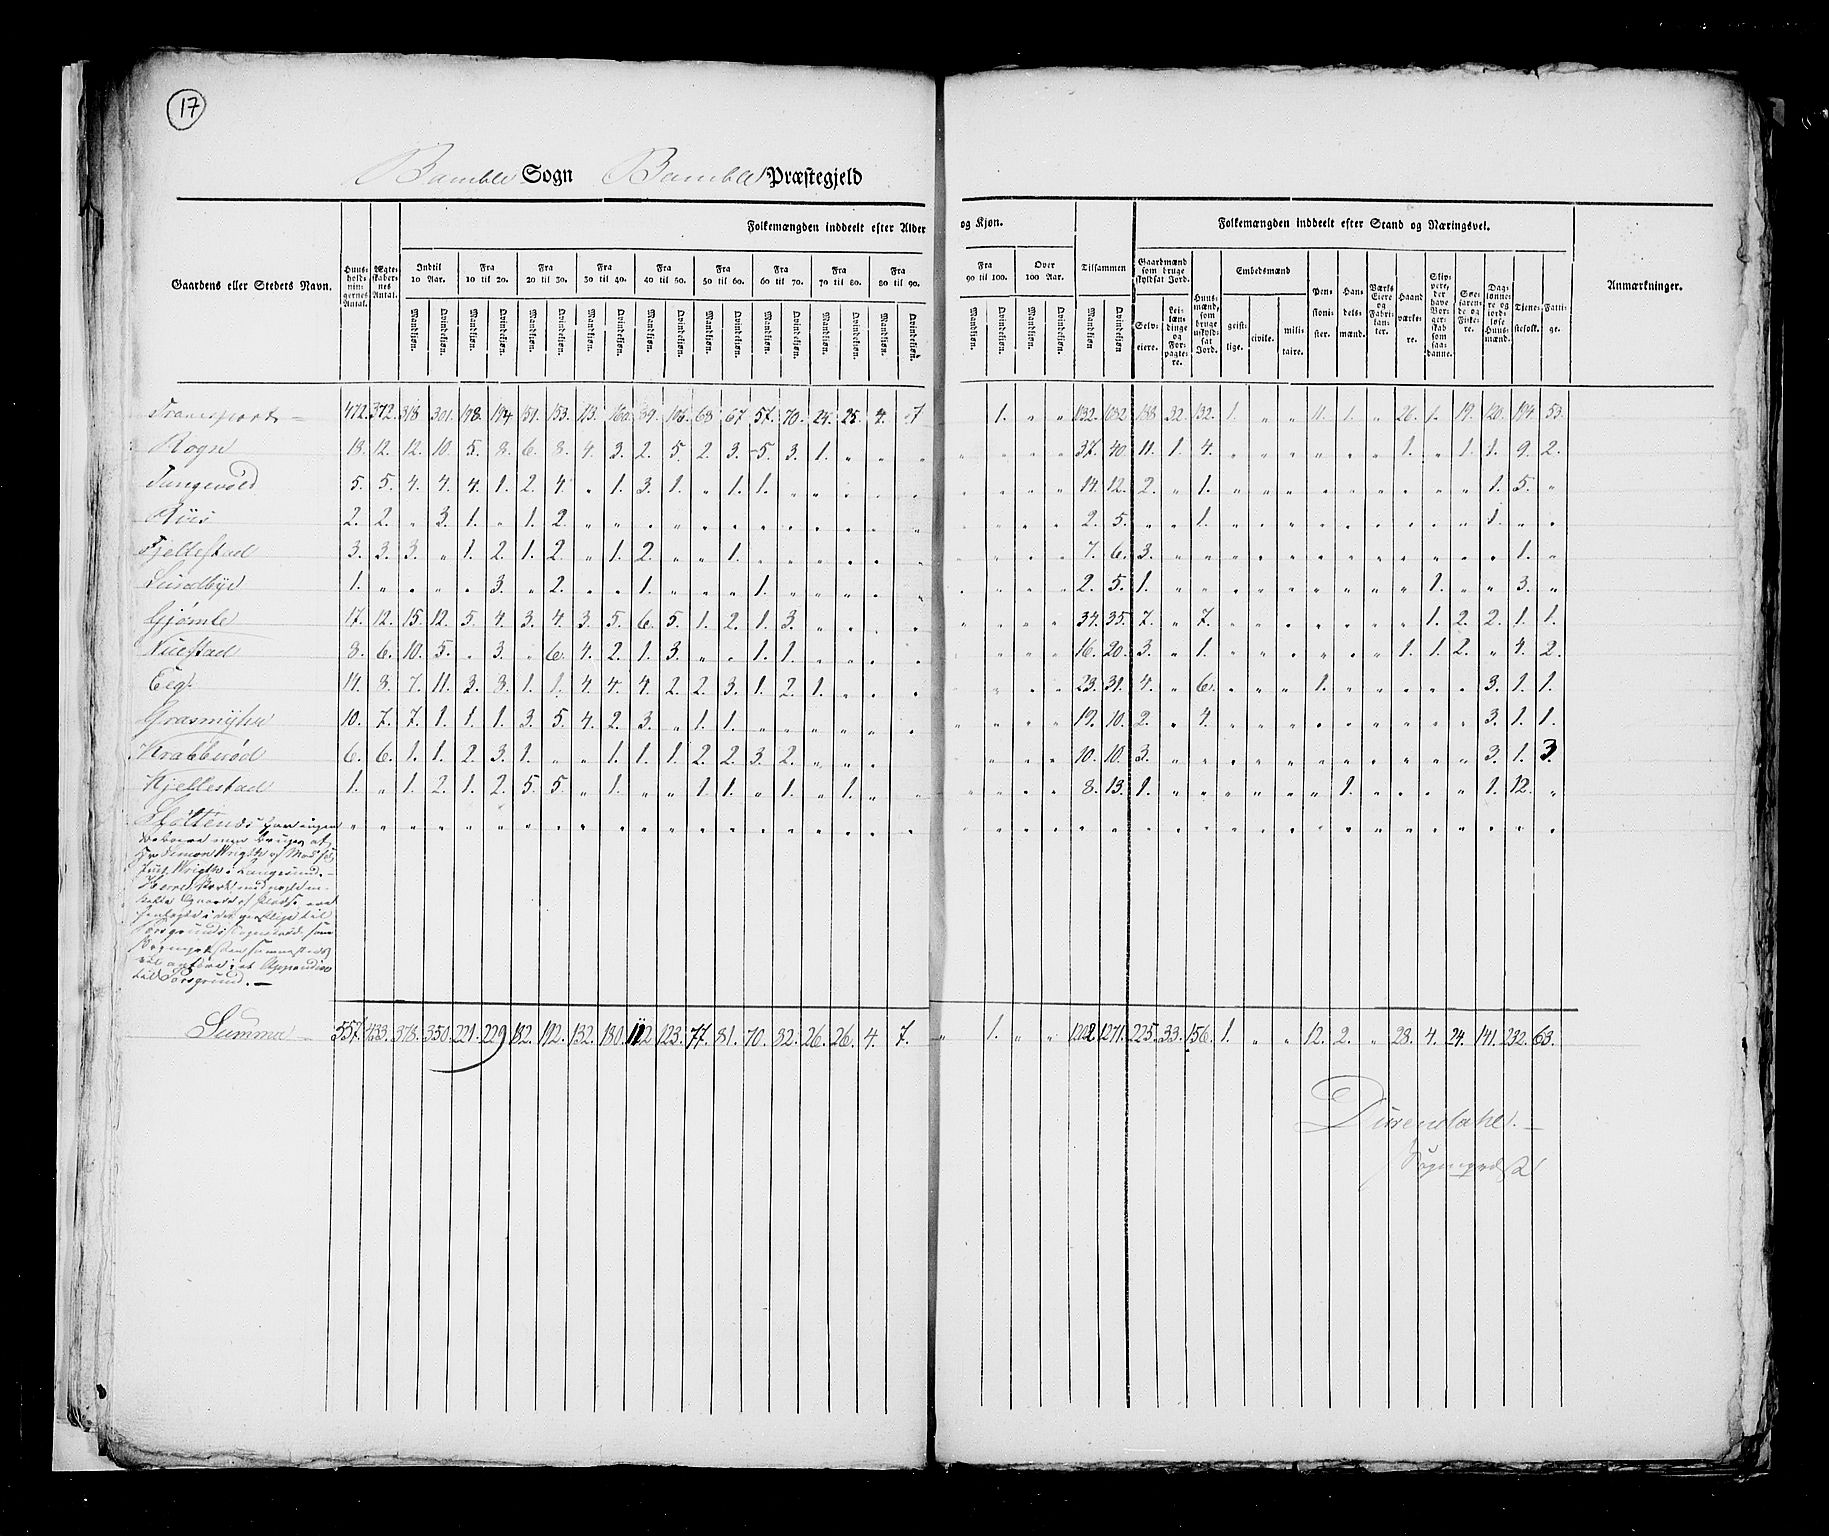 RA, Census 1825, vol. 9: Bratsberg amt, 1825, p. 17